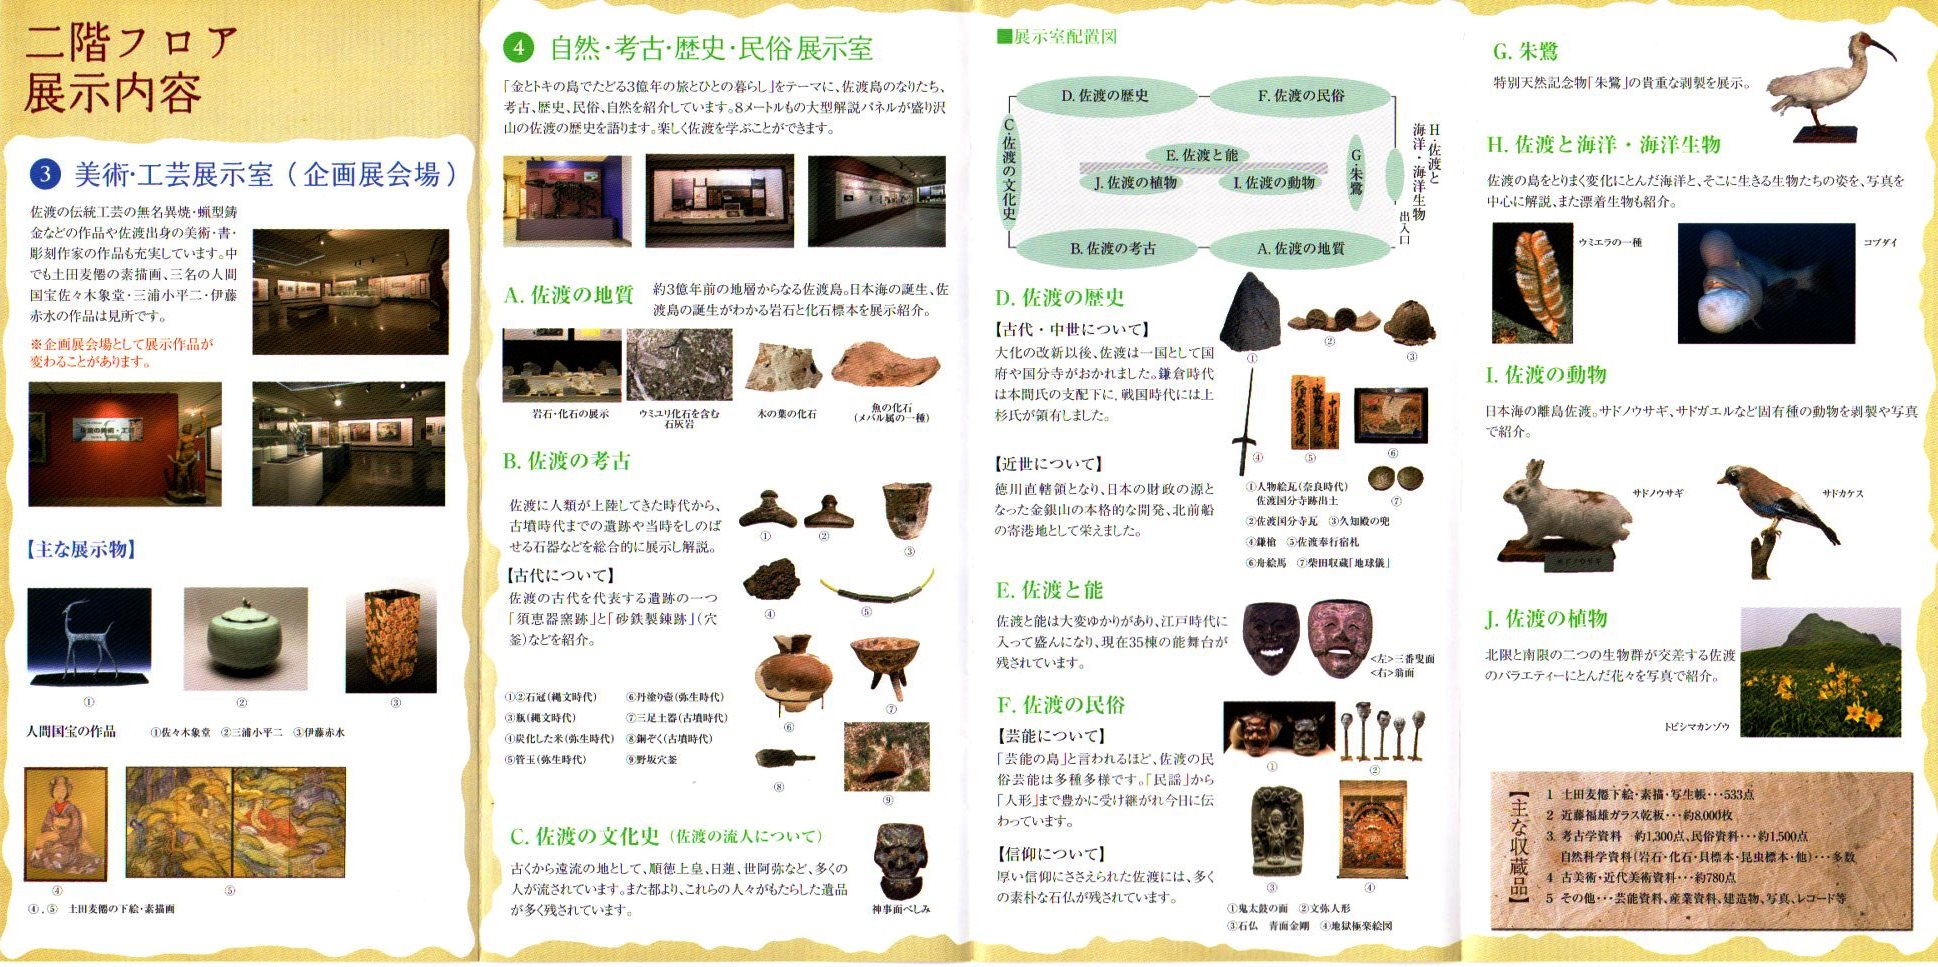 佐渡博物館 (2)